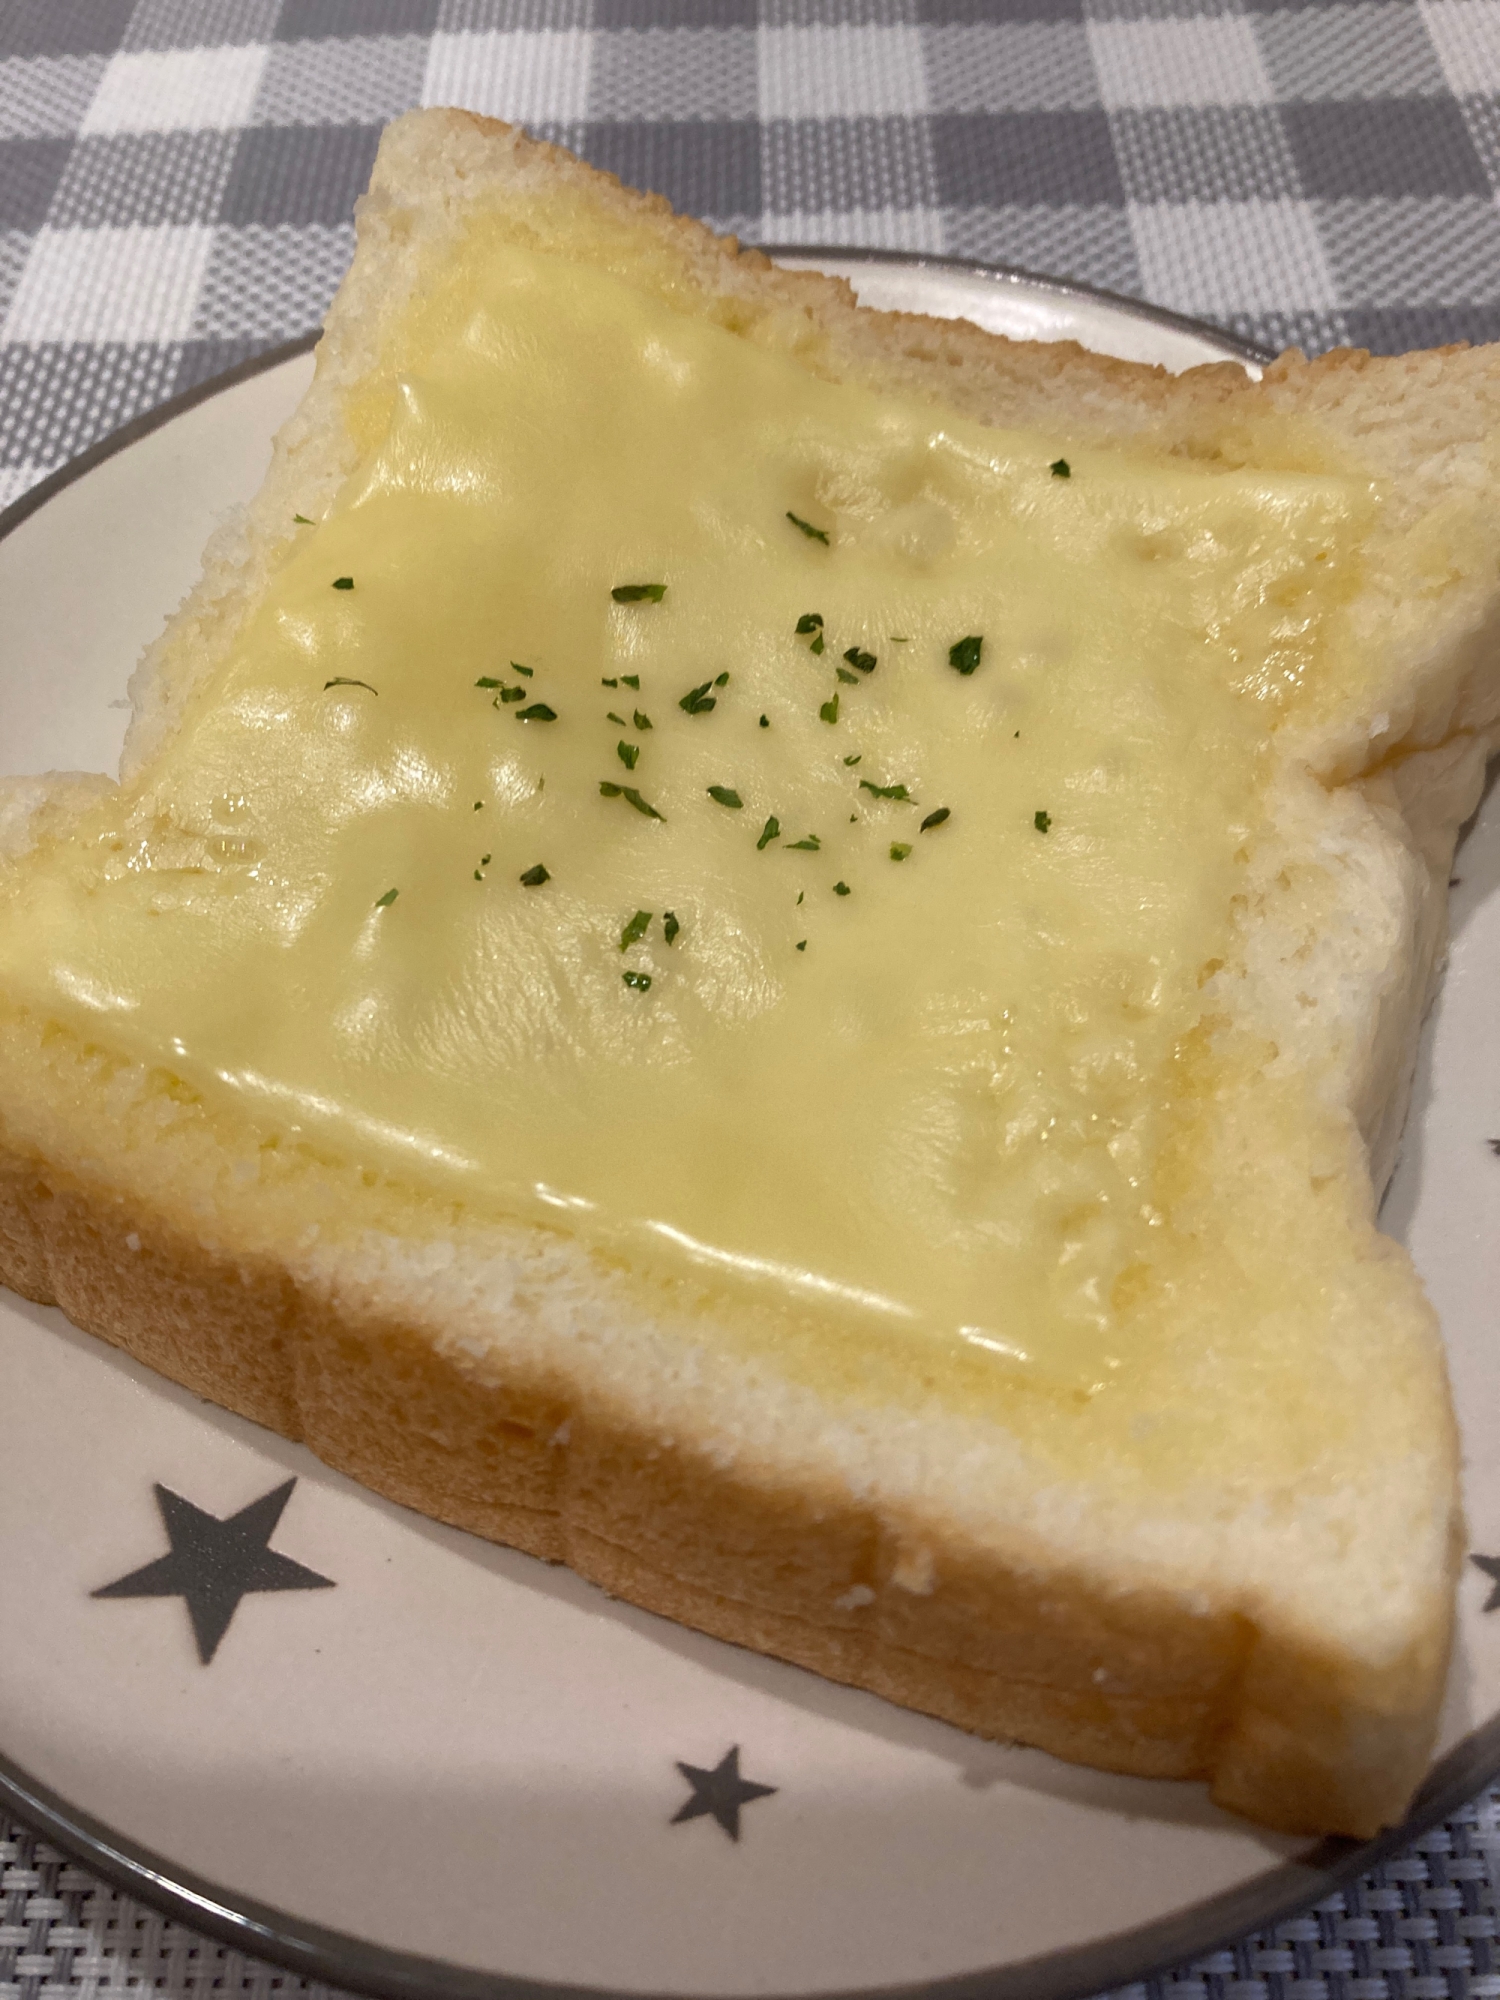 レンジでふわふわ☆チーズパン♪